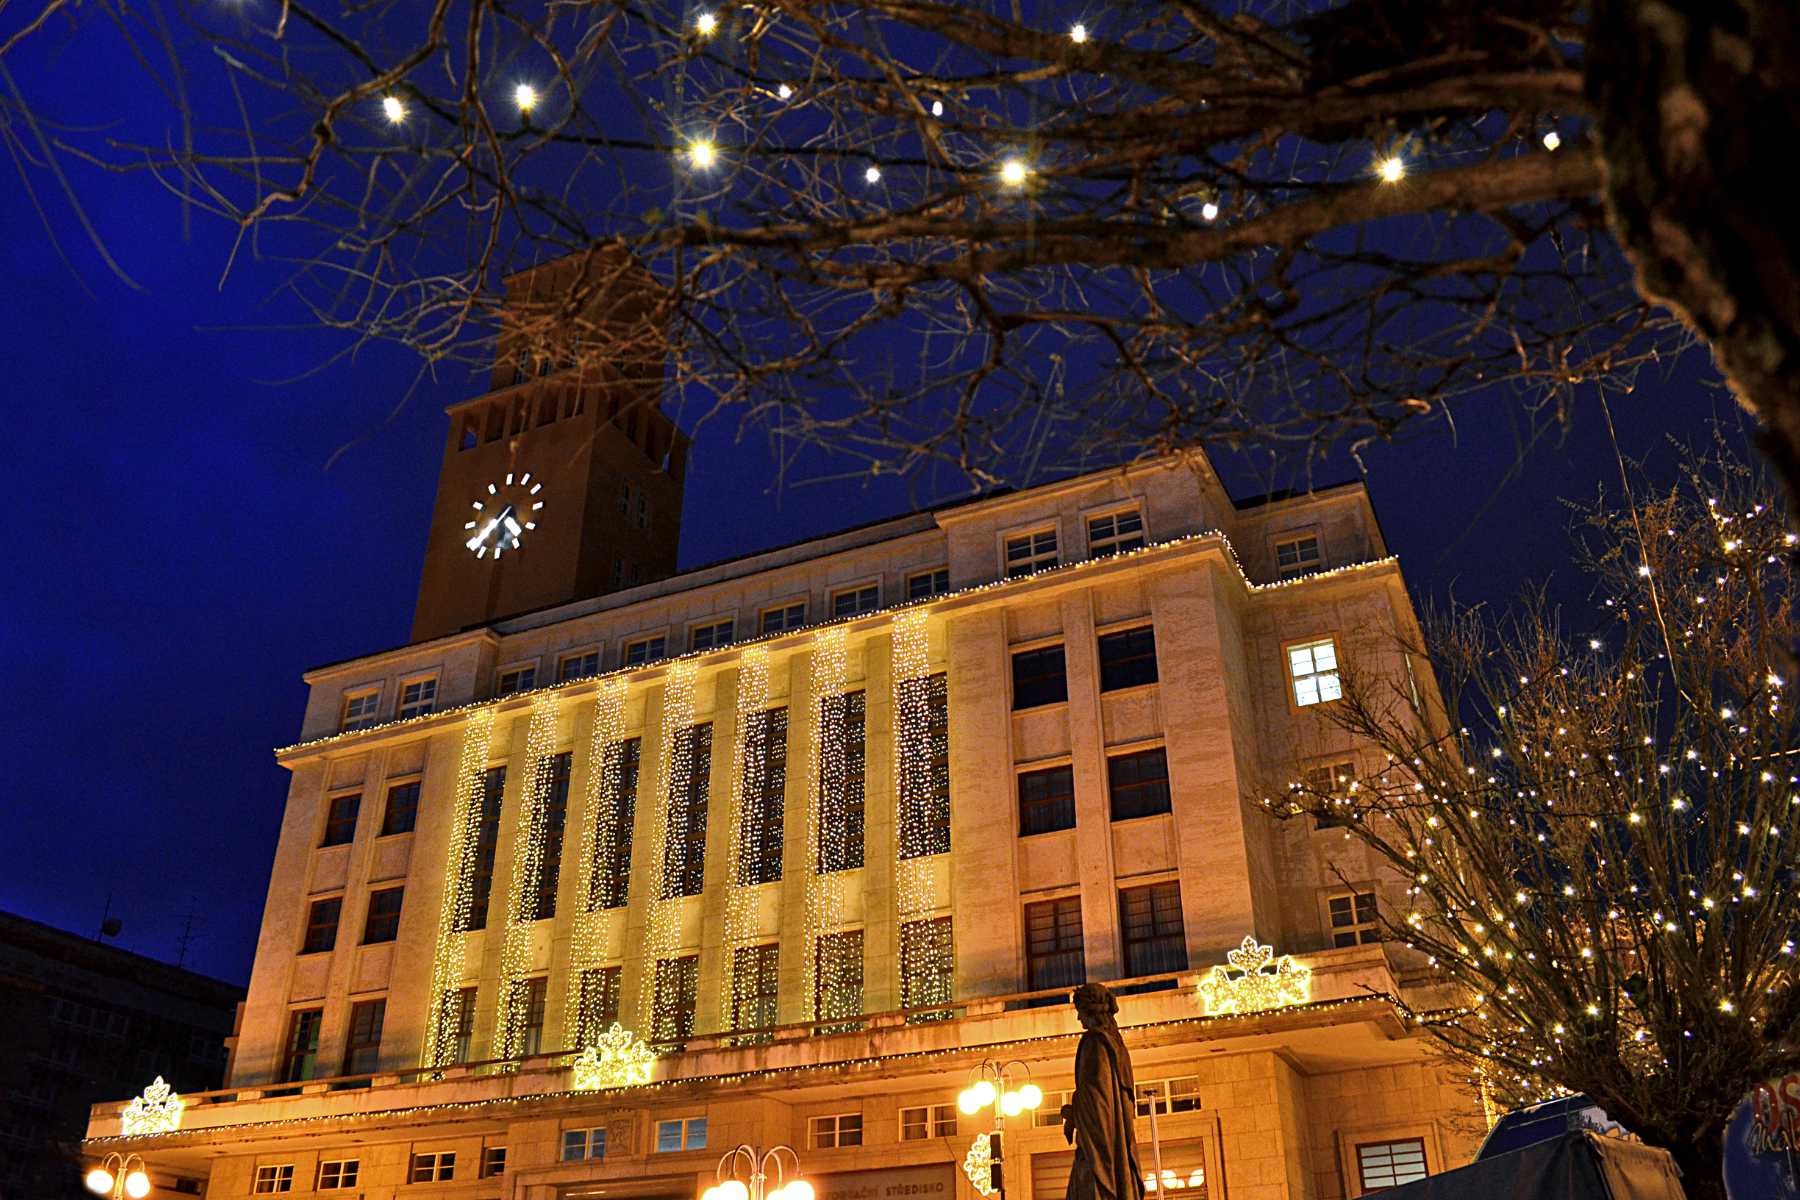 Radnice Jablonec nad Nisou v době adventu a Vánoc - večerní osvětlení, výzdoba budovy